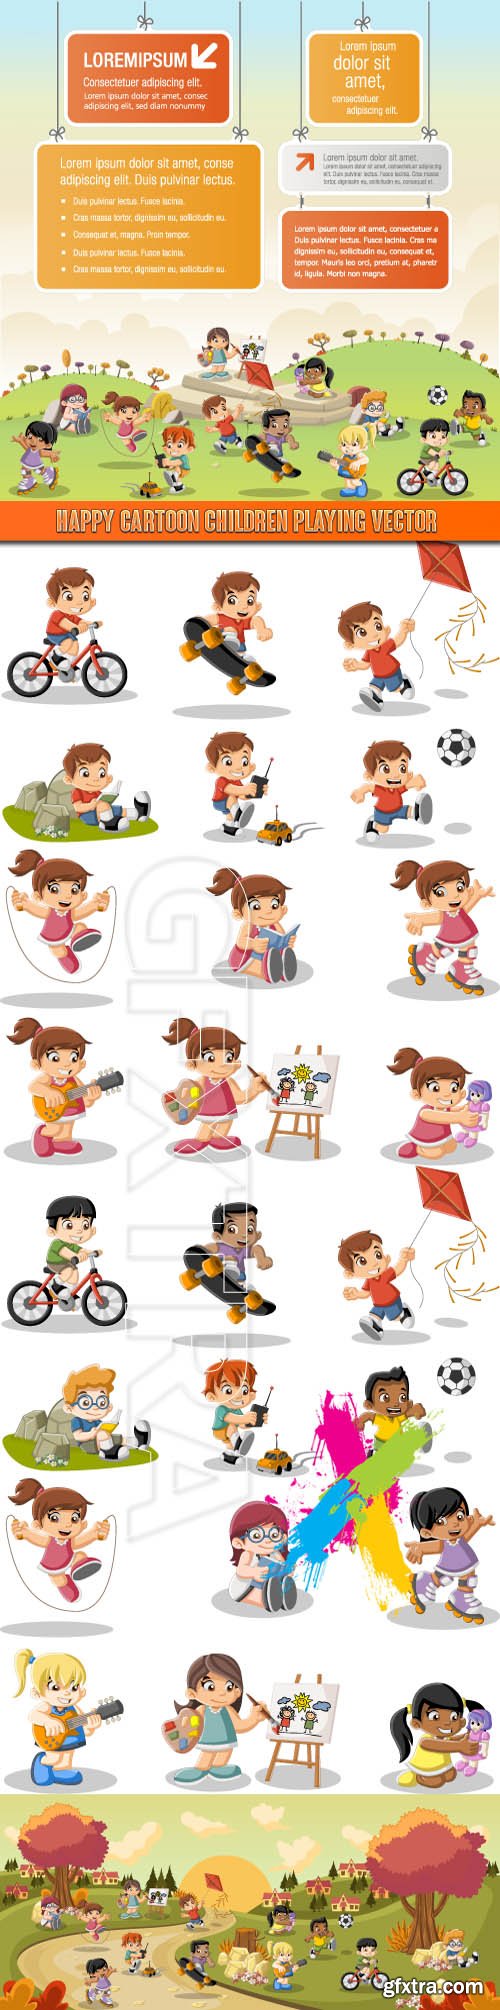 Happy cartoon children playing vector